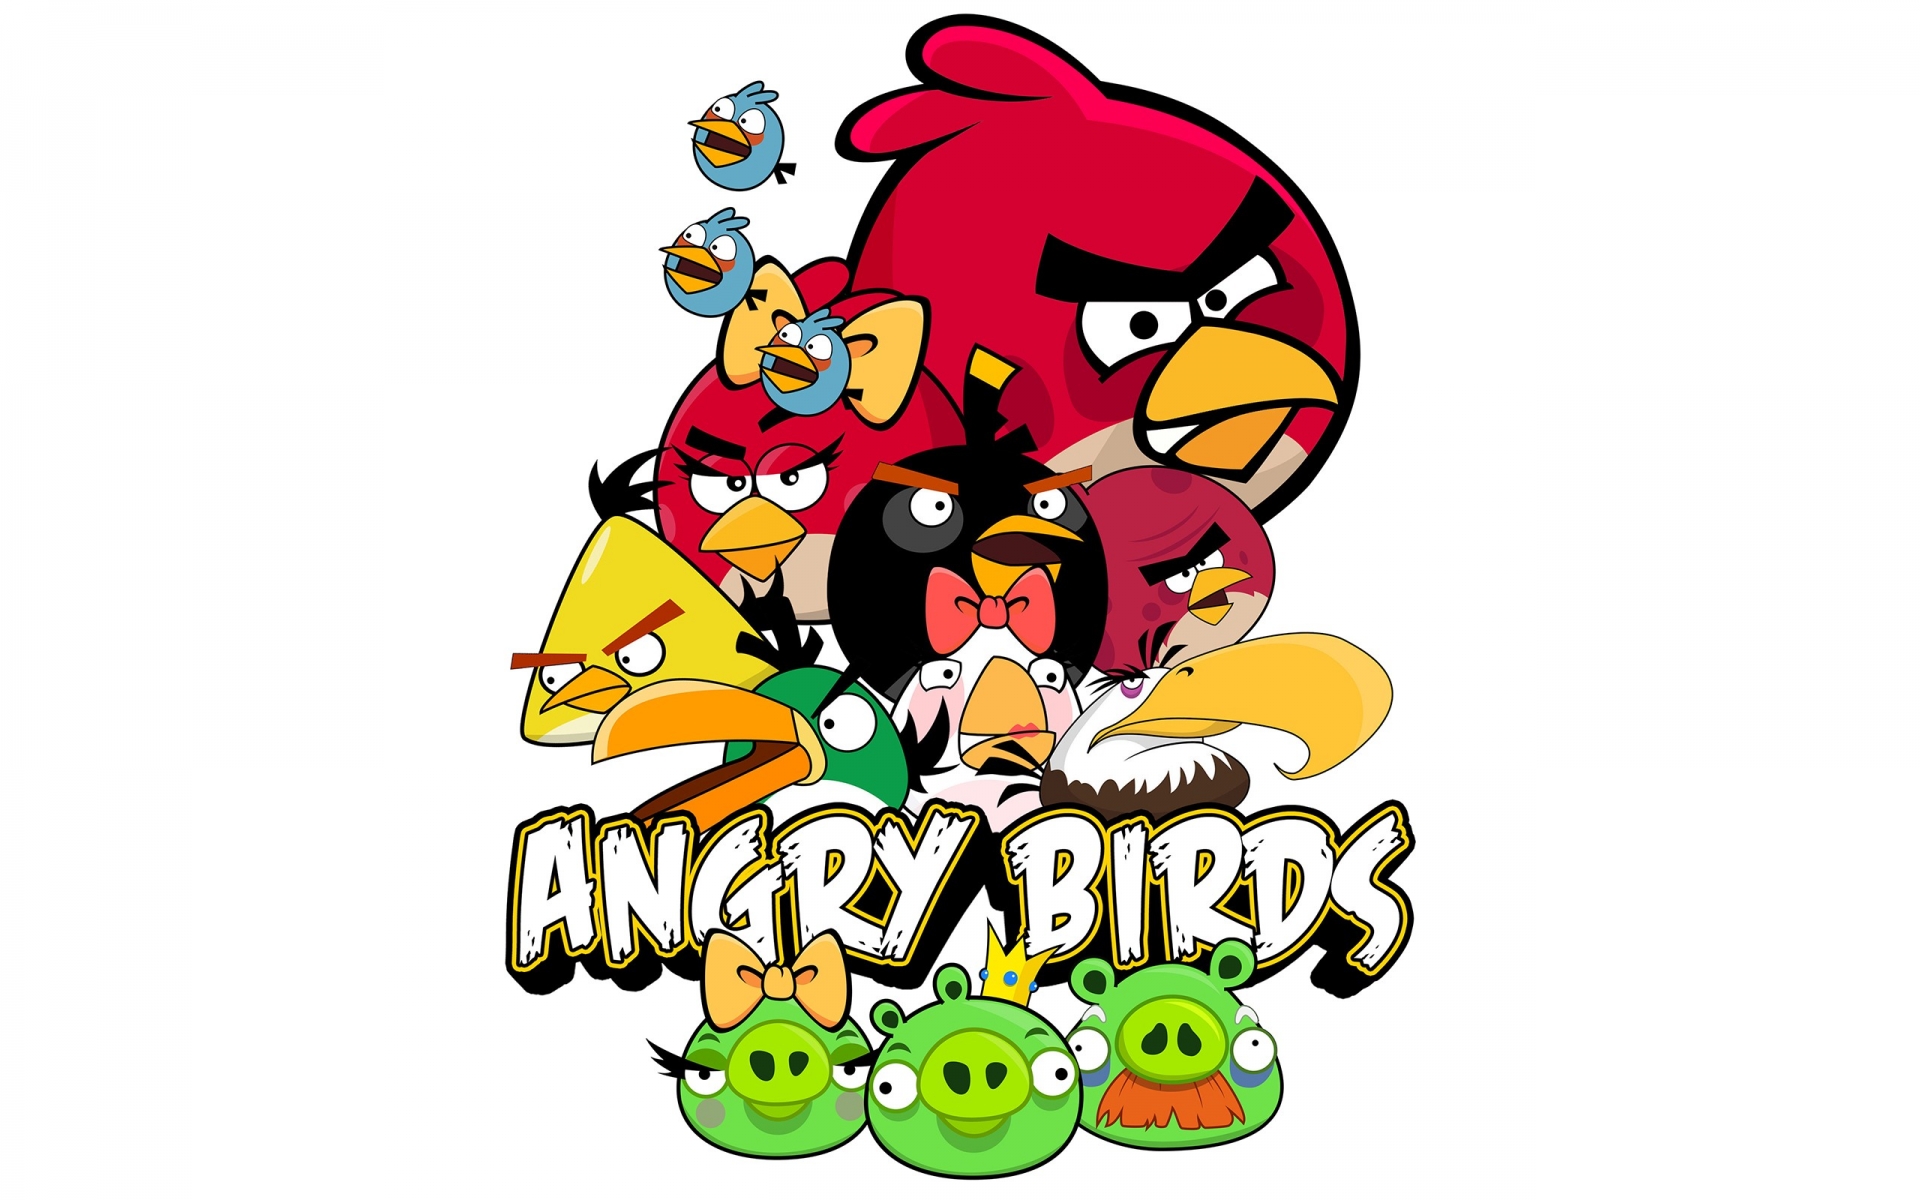 Angry Birds Desktop Wallpaper 4445 1920x1200 - uMad.com